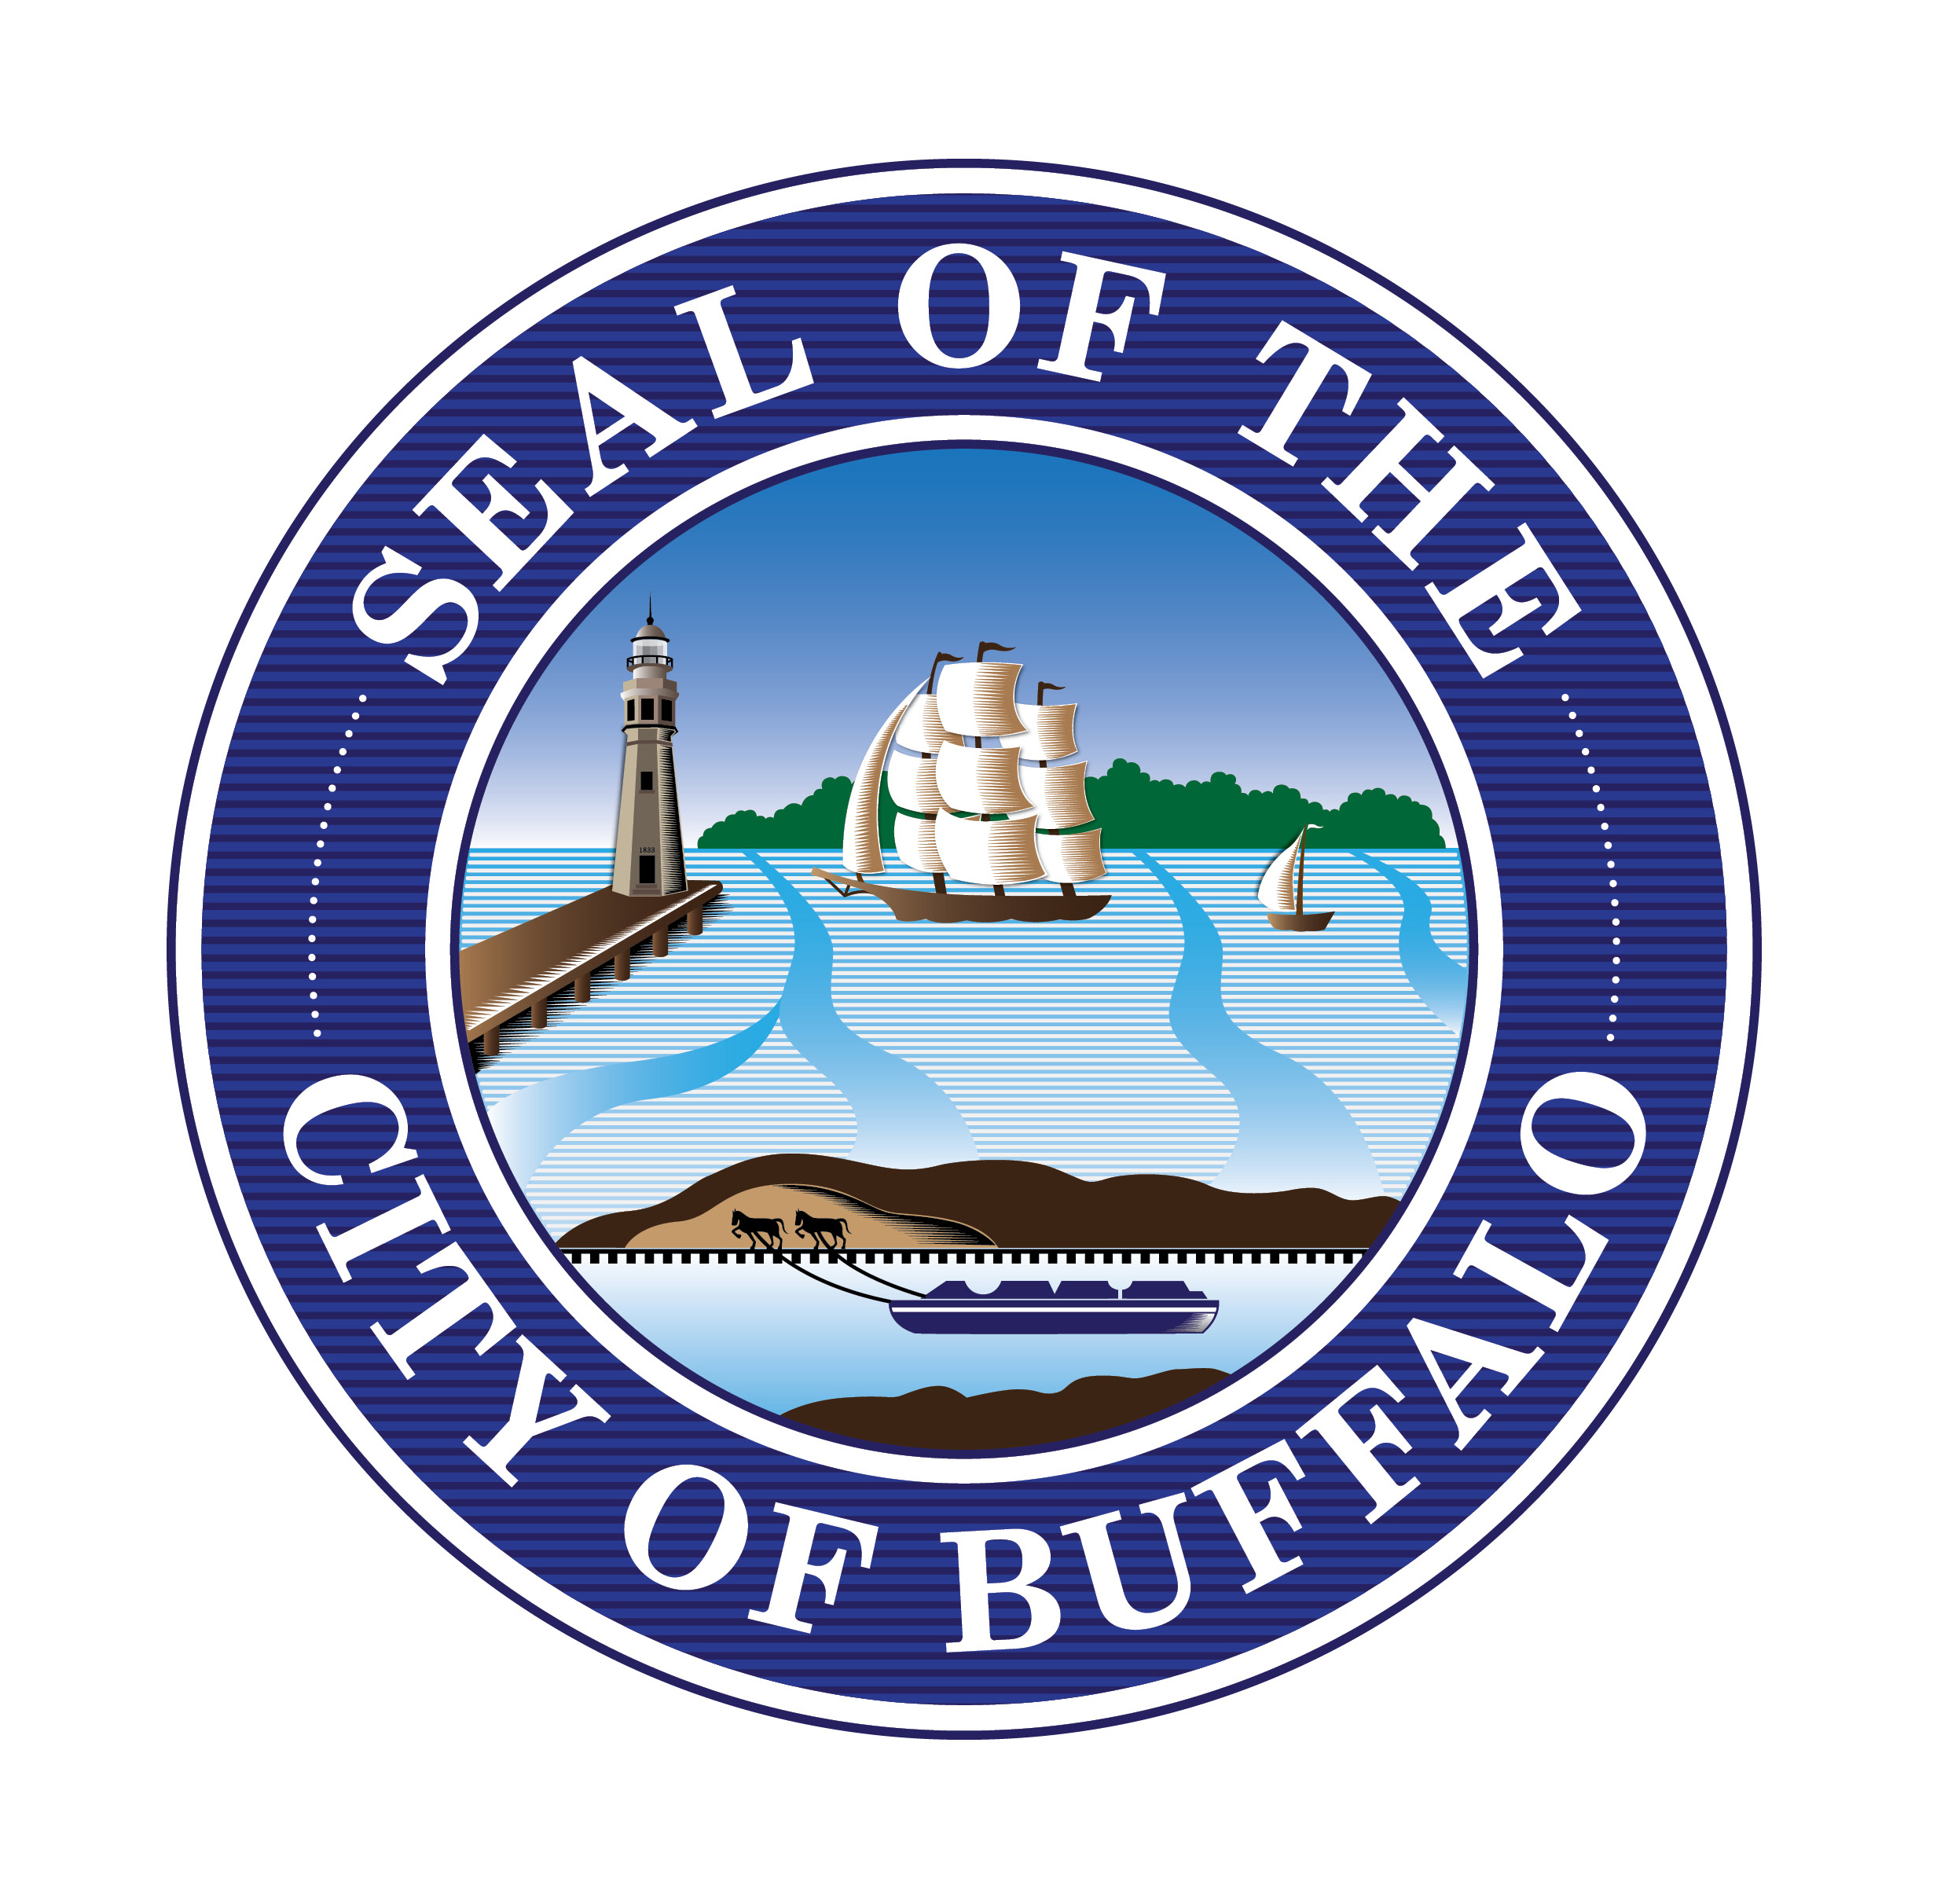 City of Buffalo